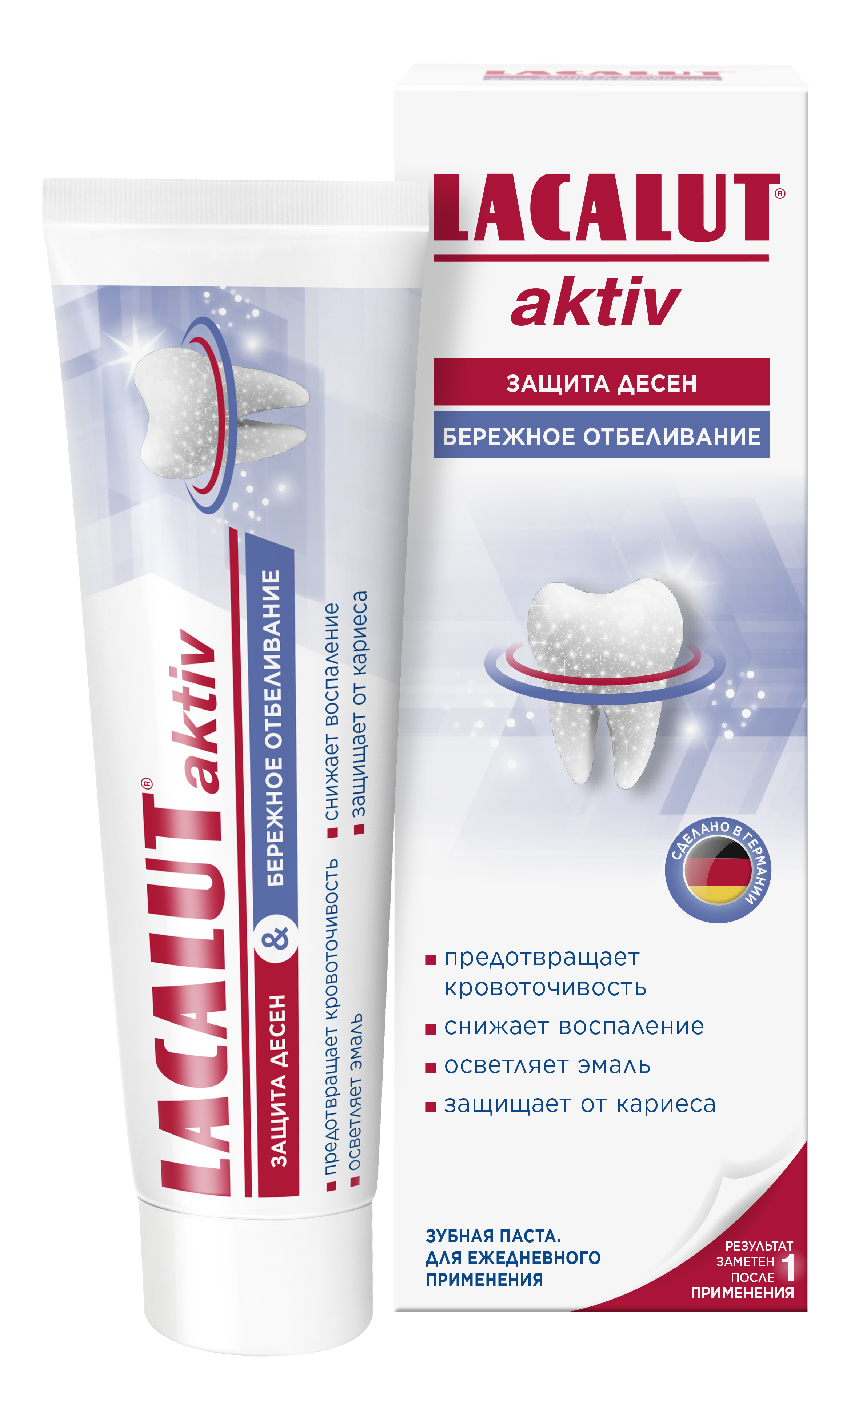 Купить Лакалют паста зубная Актив защита десен и бережное отбеливание 65г, Dr.Theiss Naturwaren GmbH